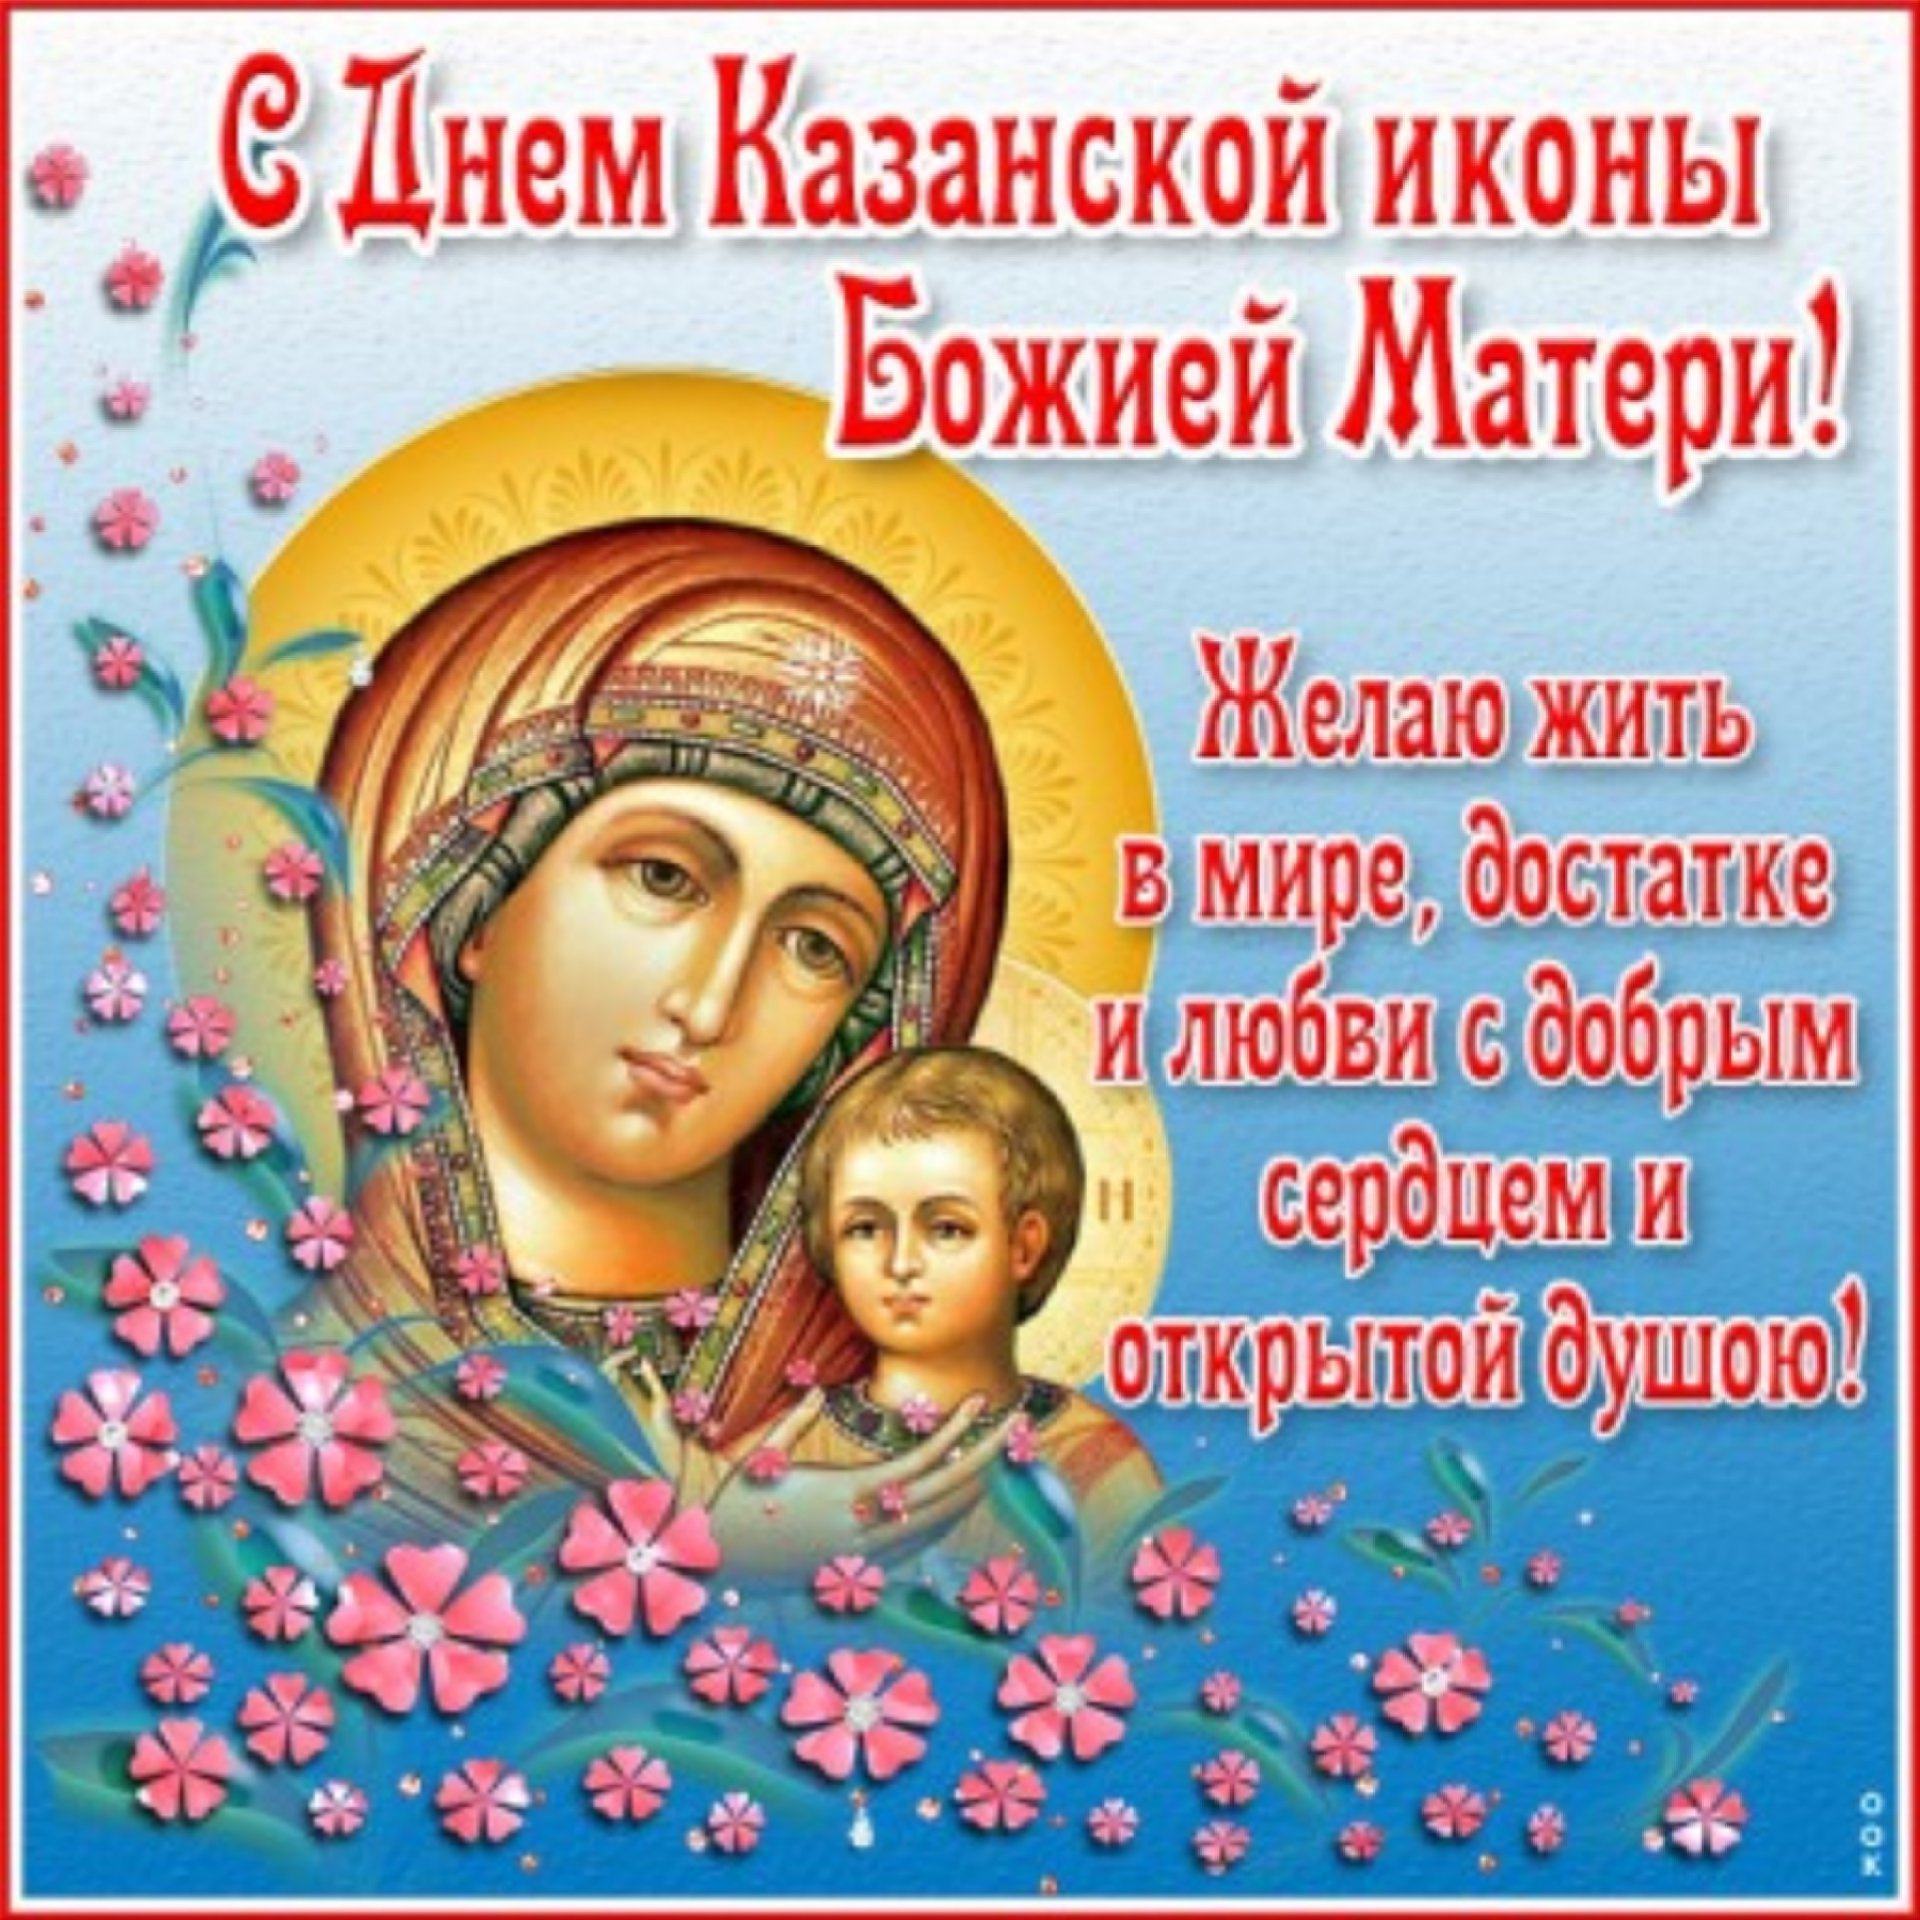 Фото Казанской иконы Божьей Матери: высокое качество изображений